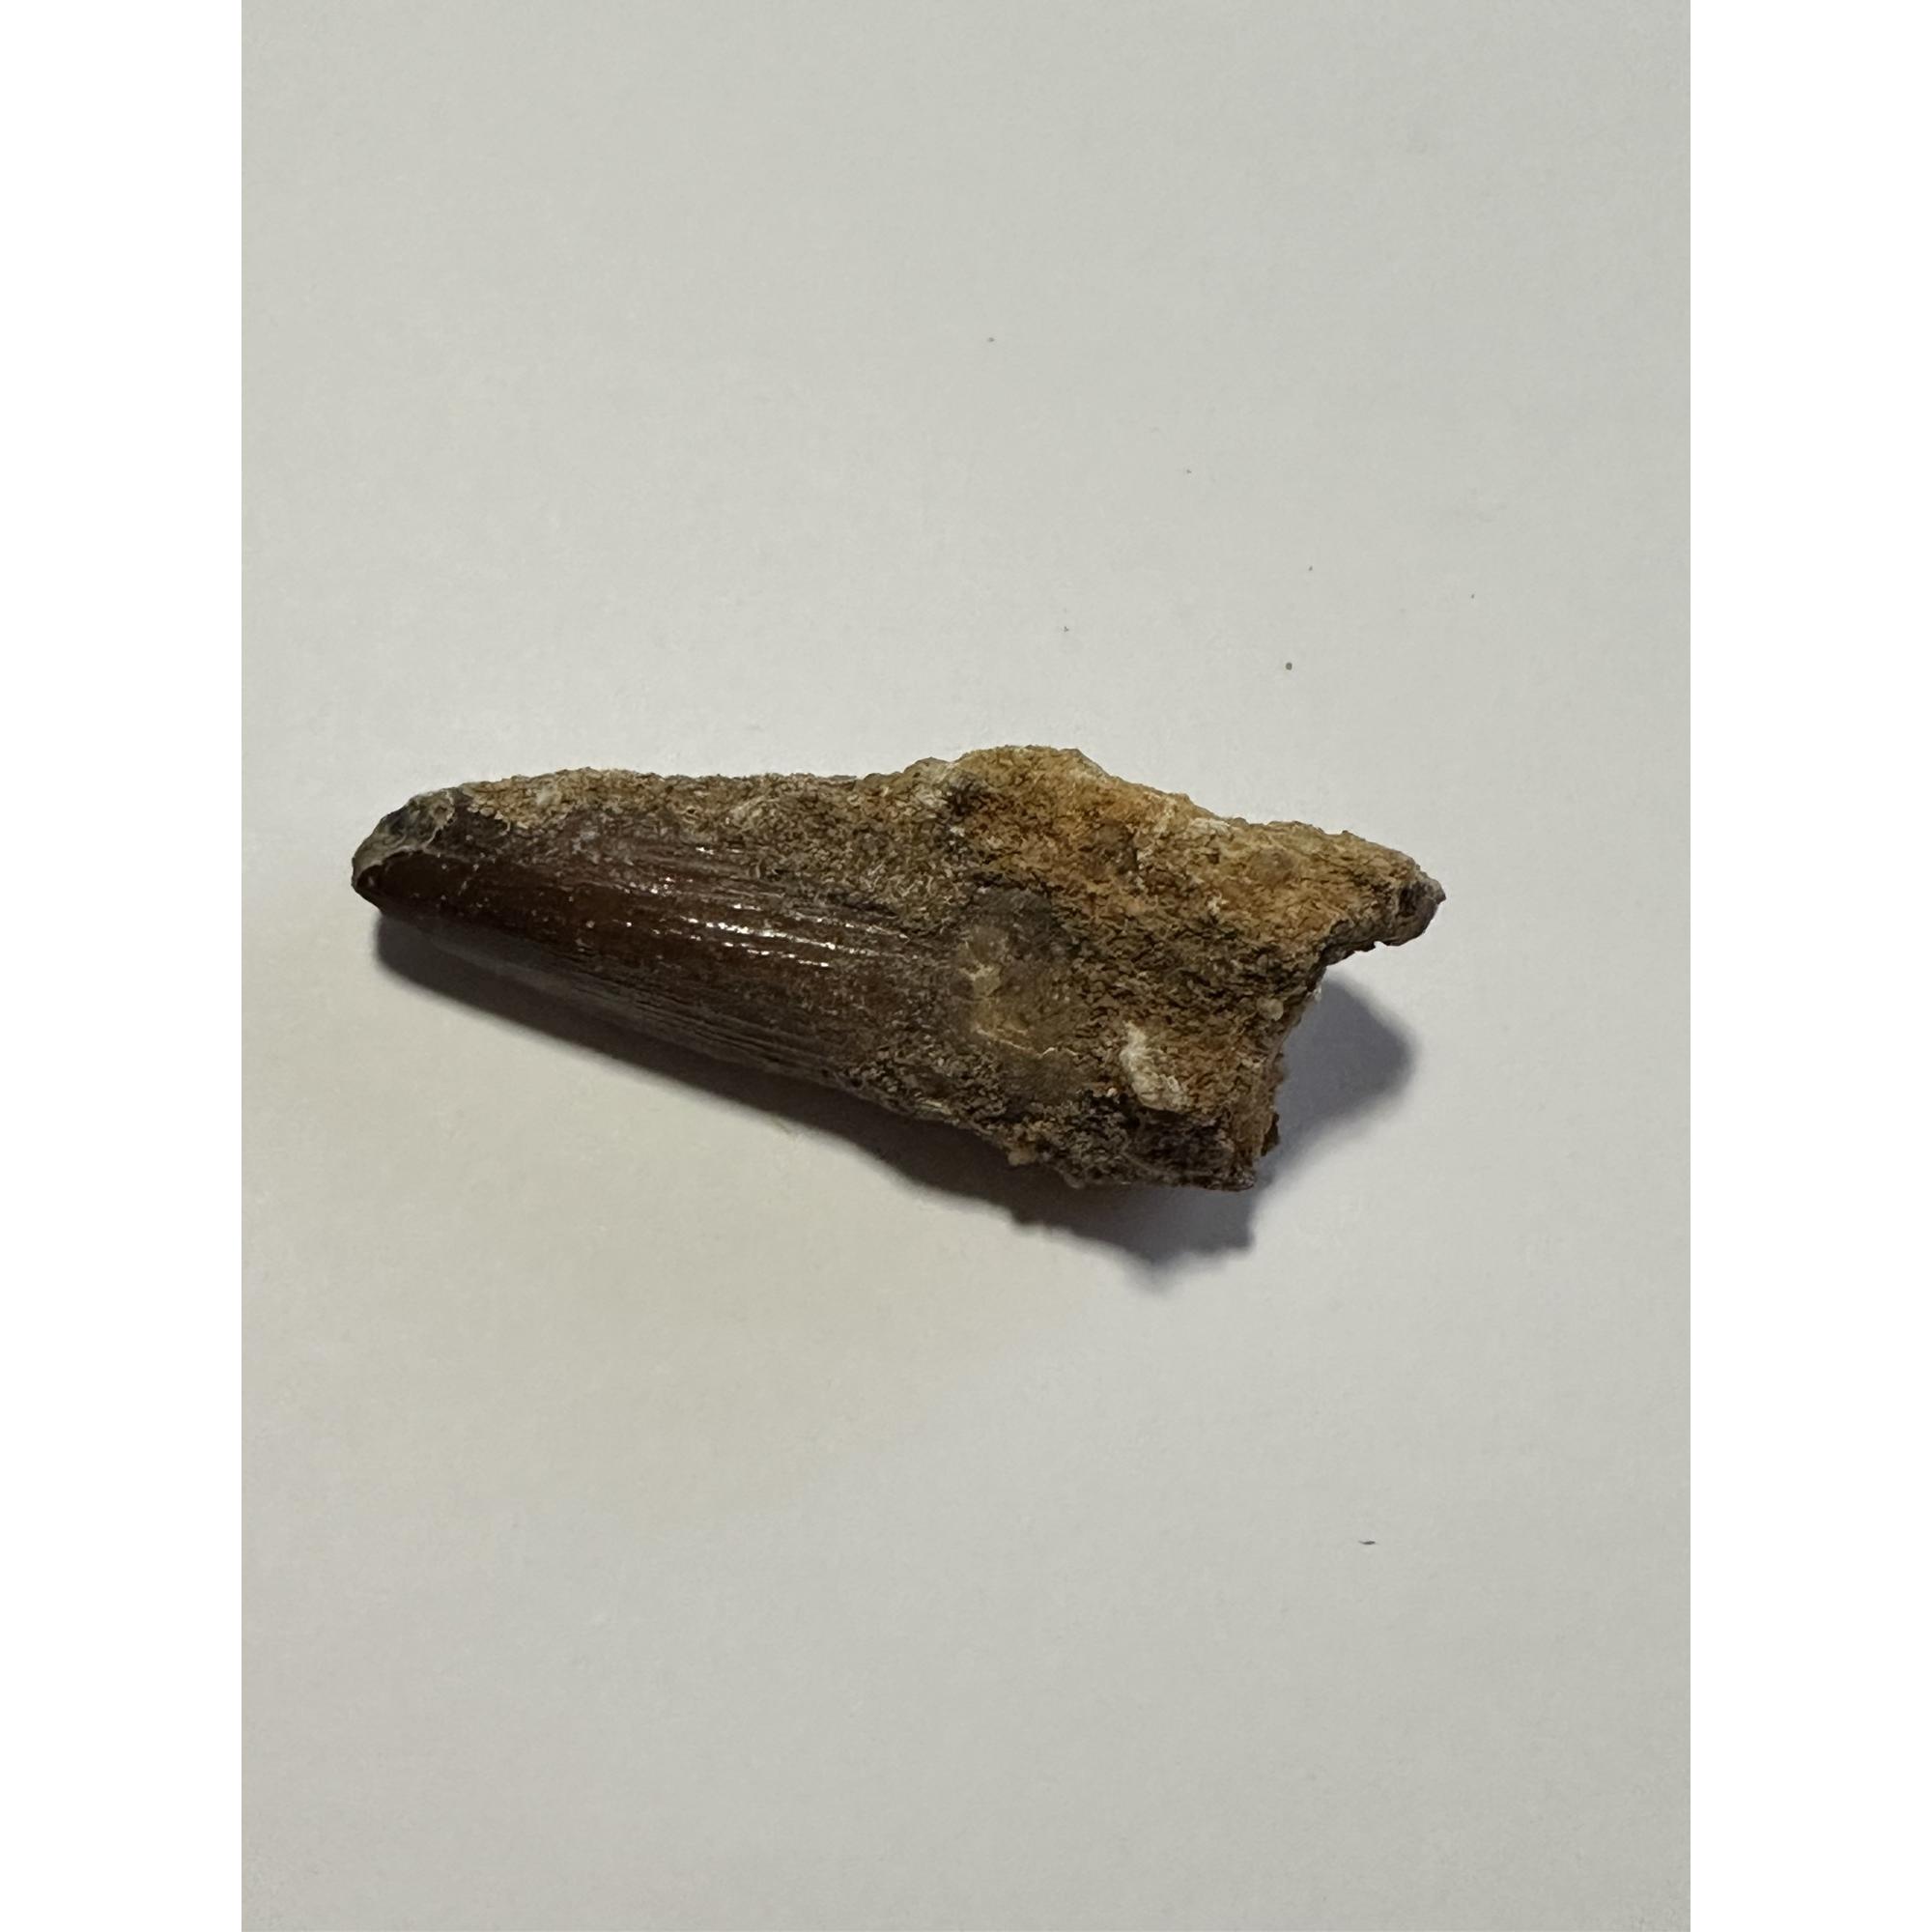 Spinosaurus dinosaur fossil Tooth Prehistoric Online